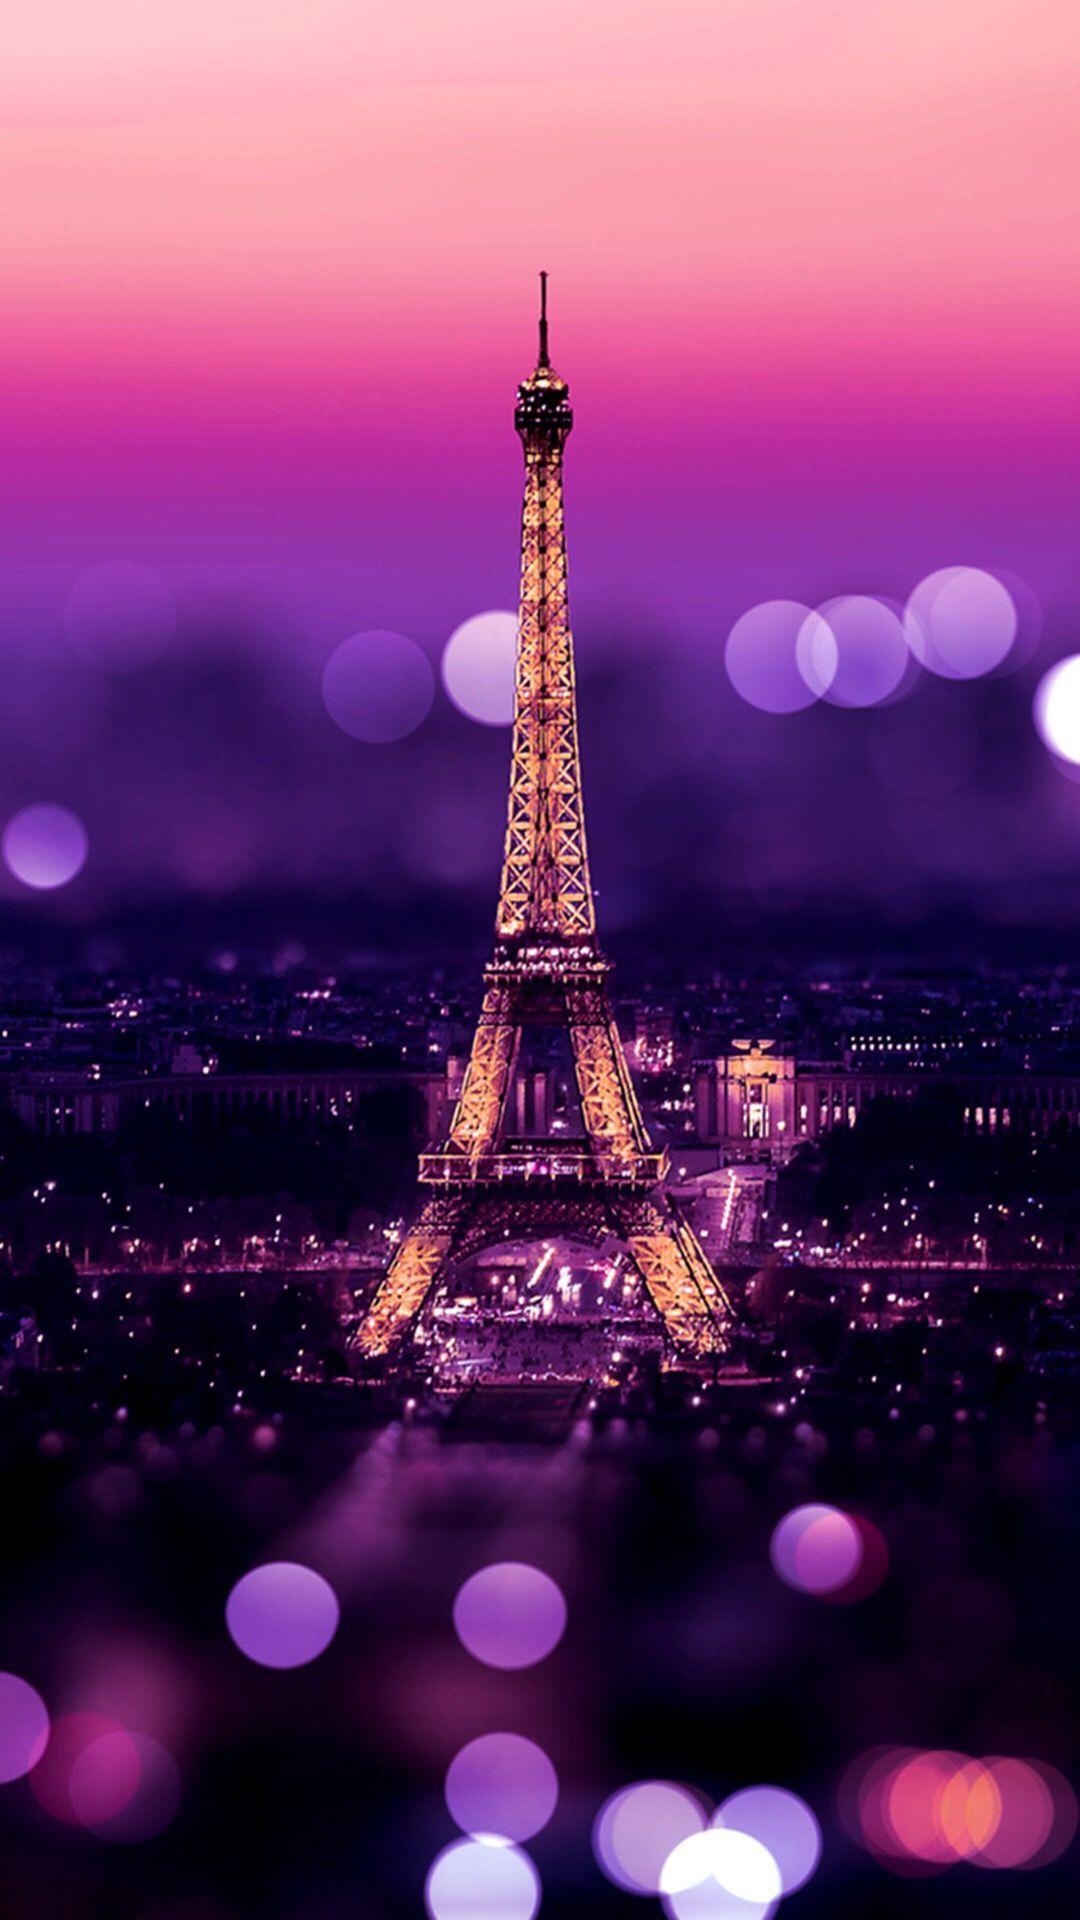 588 Paris Tháp Eiffel Ảnh, Ảnh Và Hình Nền Để Tải Về Miễn Phí - Pngtree